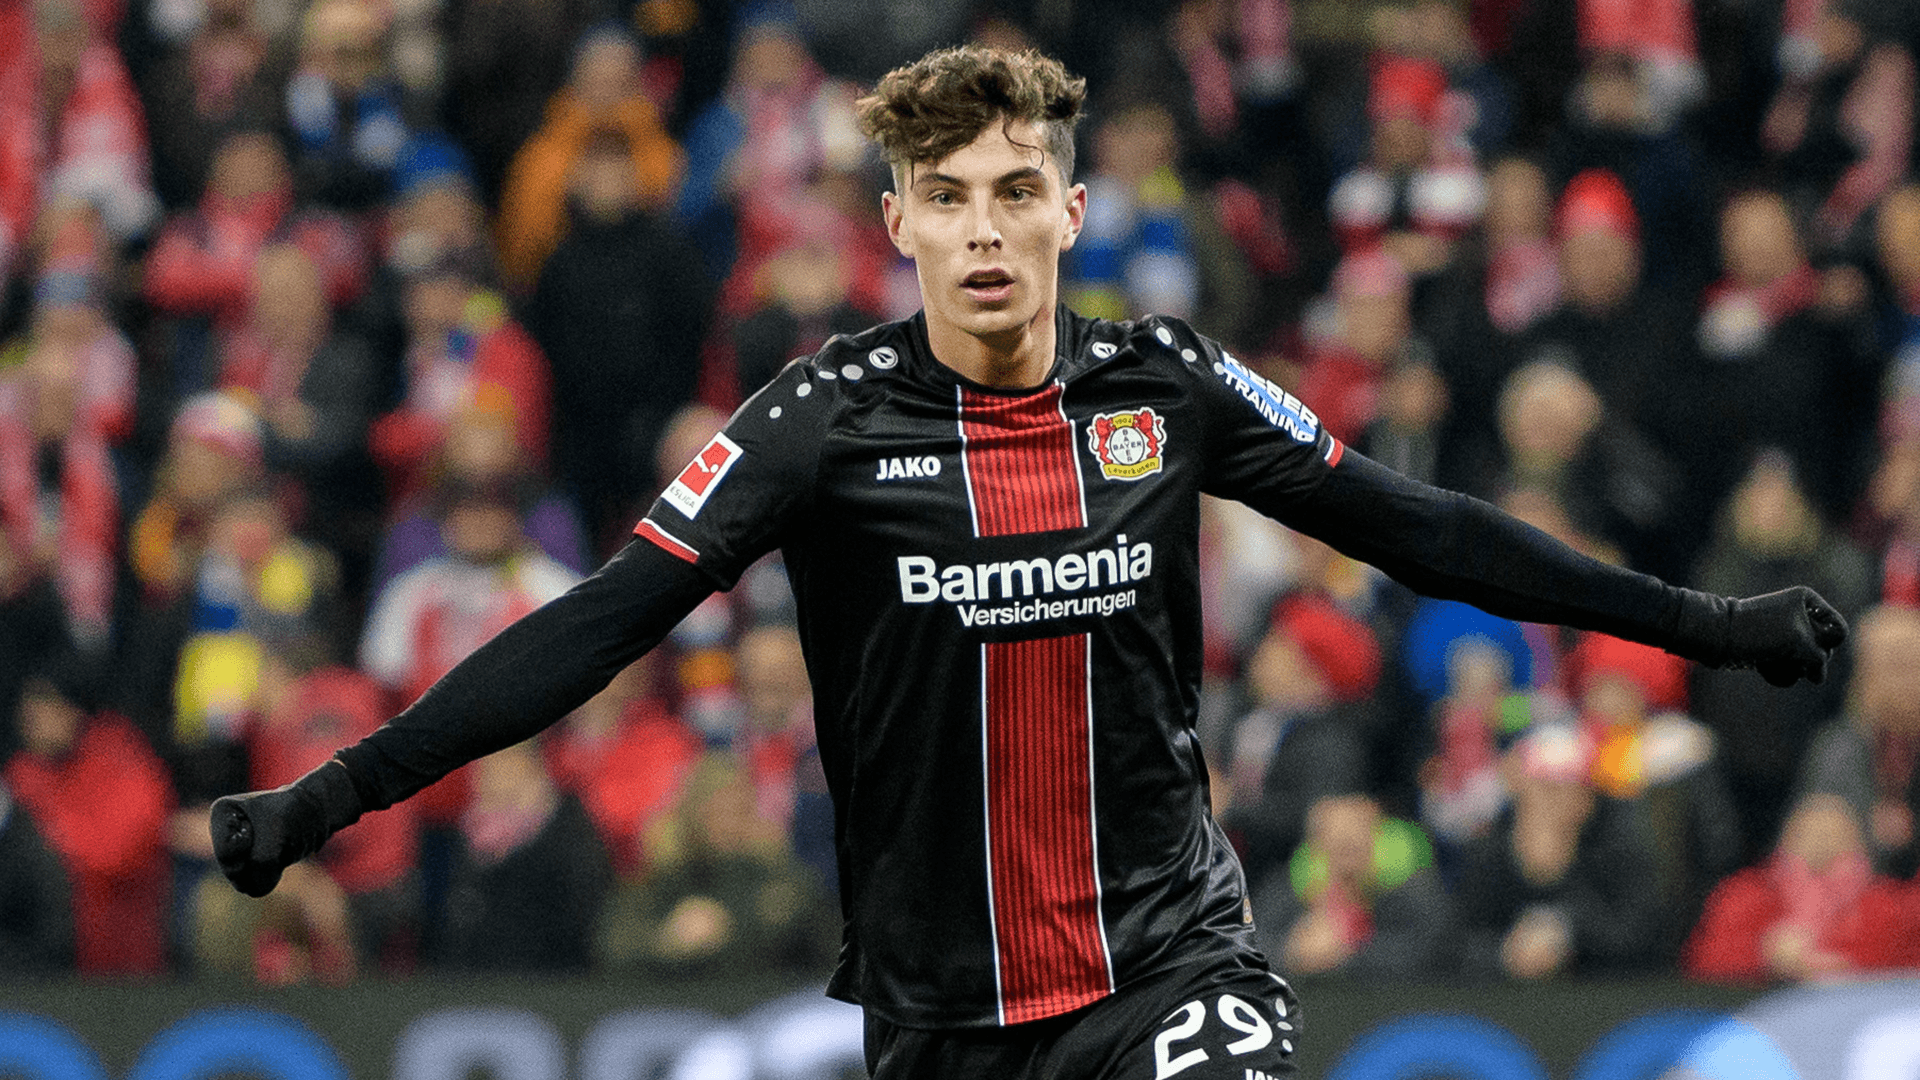 Kai Havertz transfer news: Bayer Leverkusen will not be selling teen